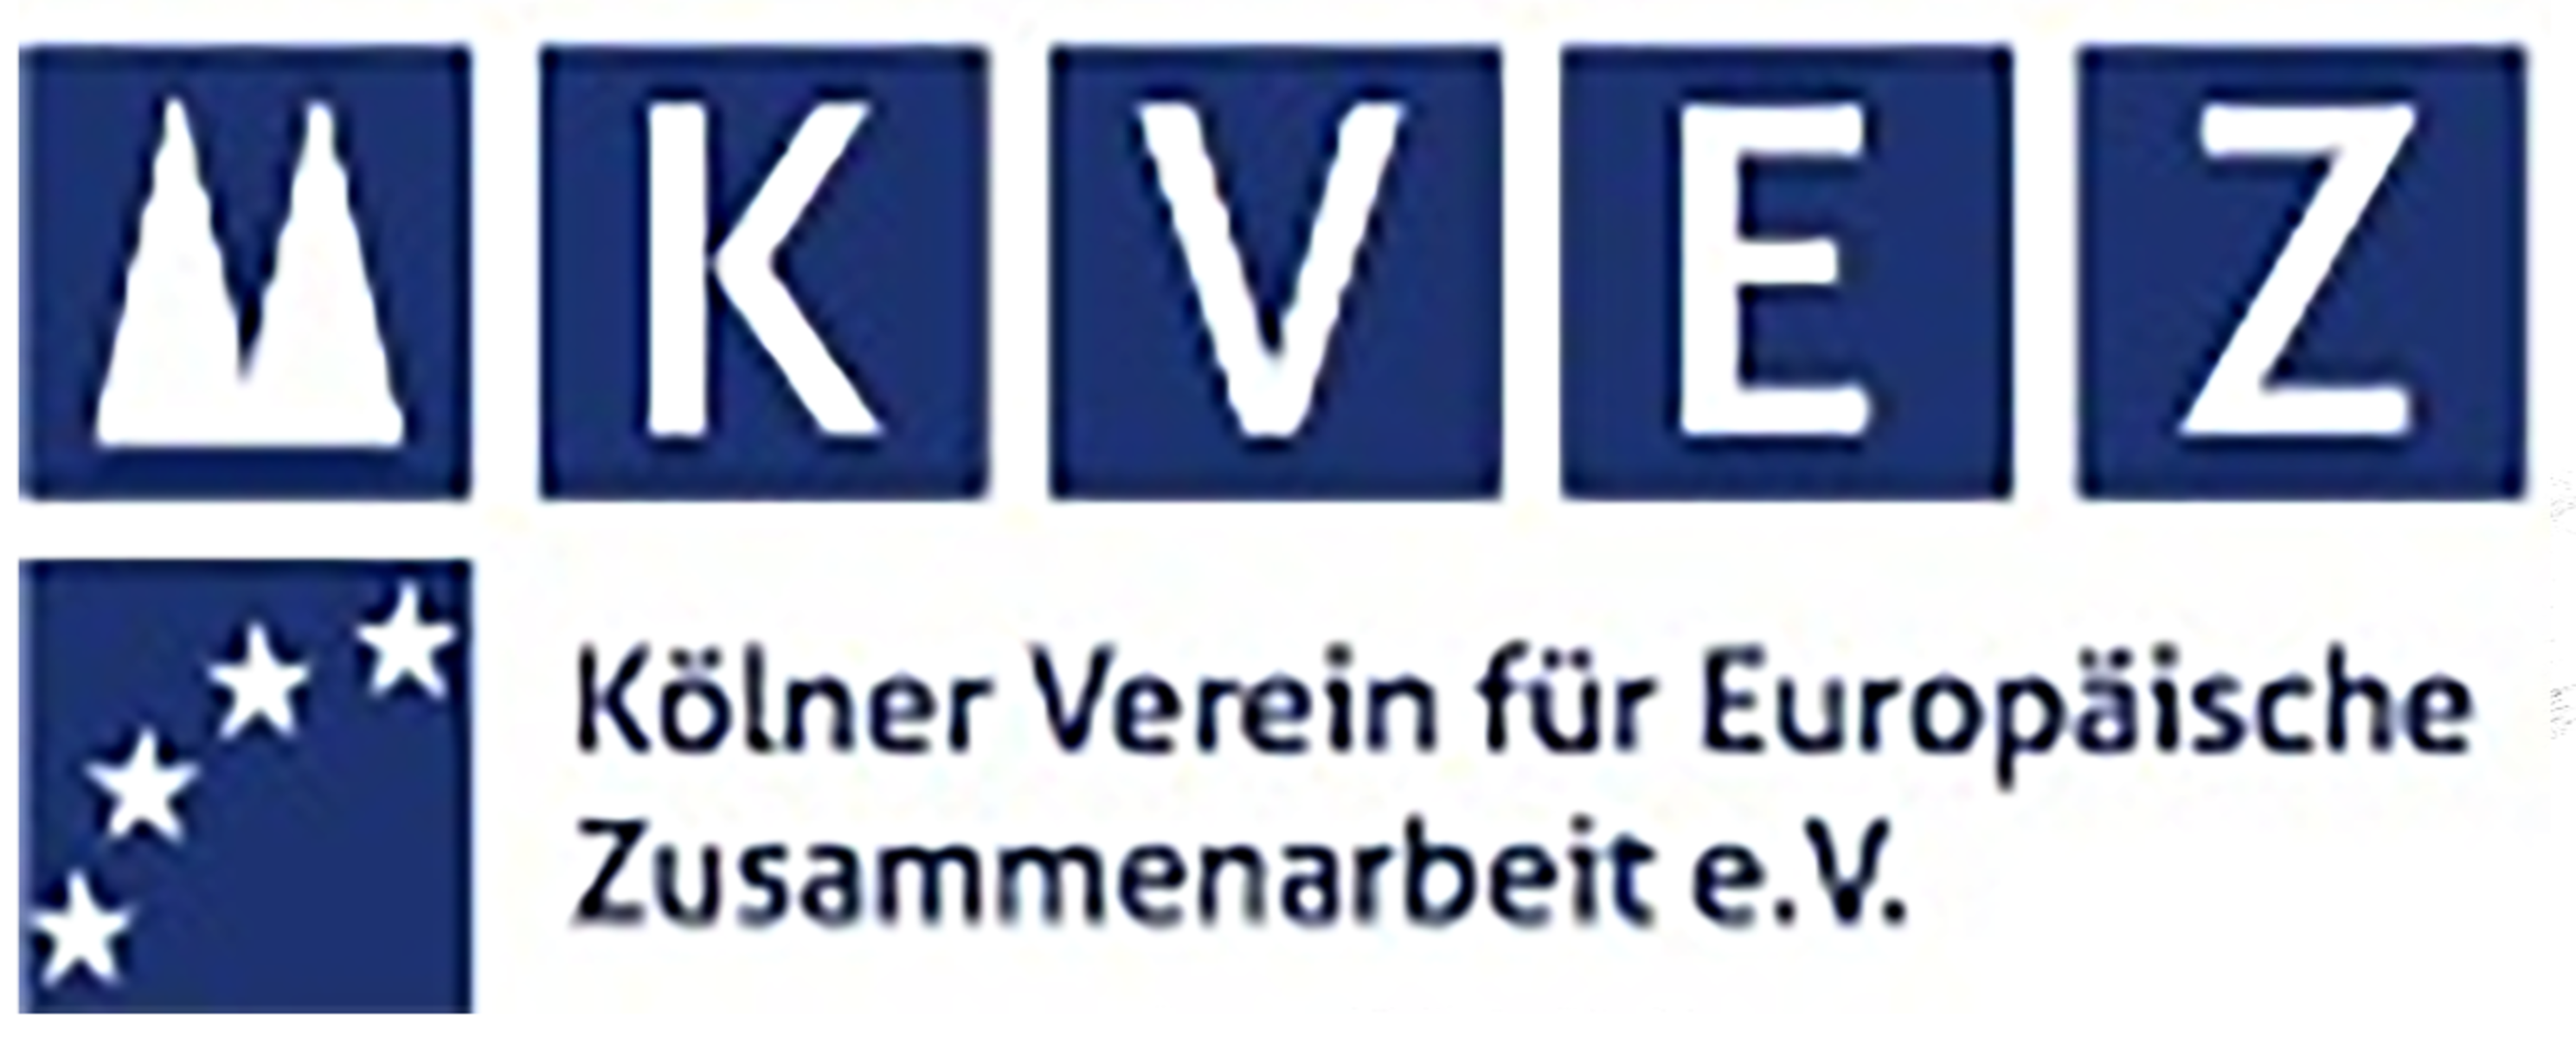 Kölner Verein für europäische Zusammenarbeit e.V.